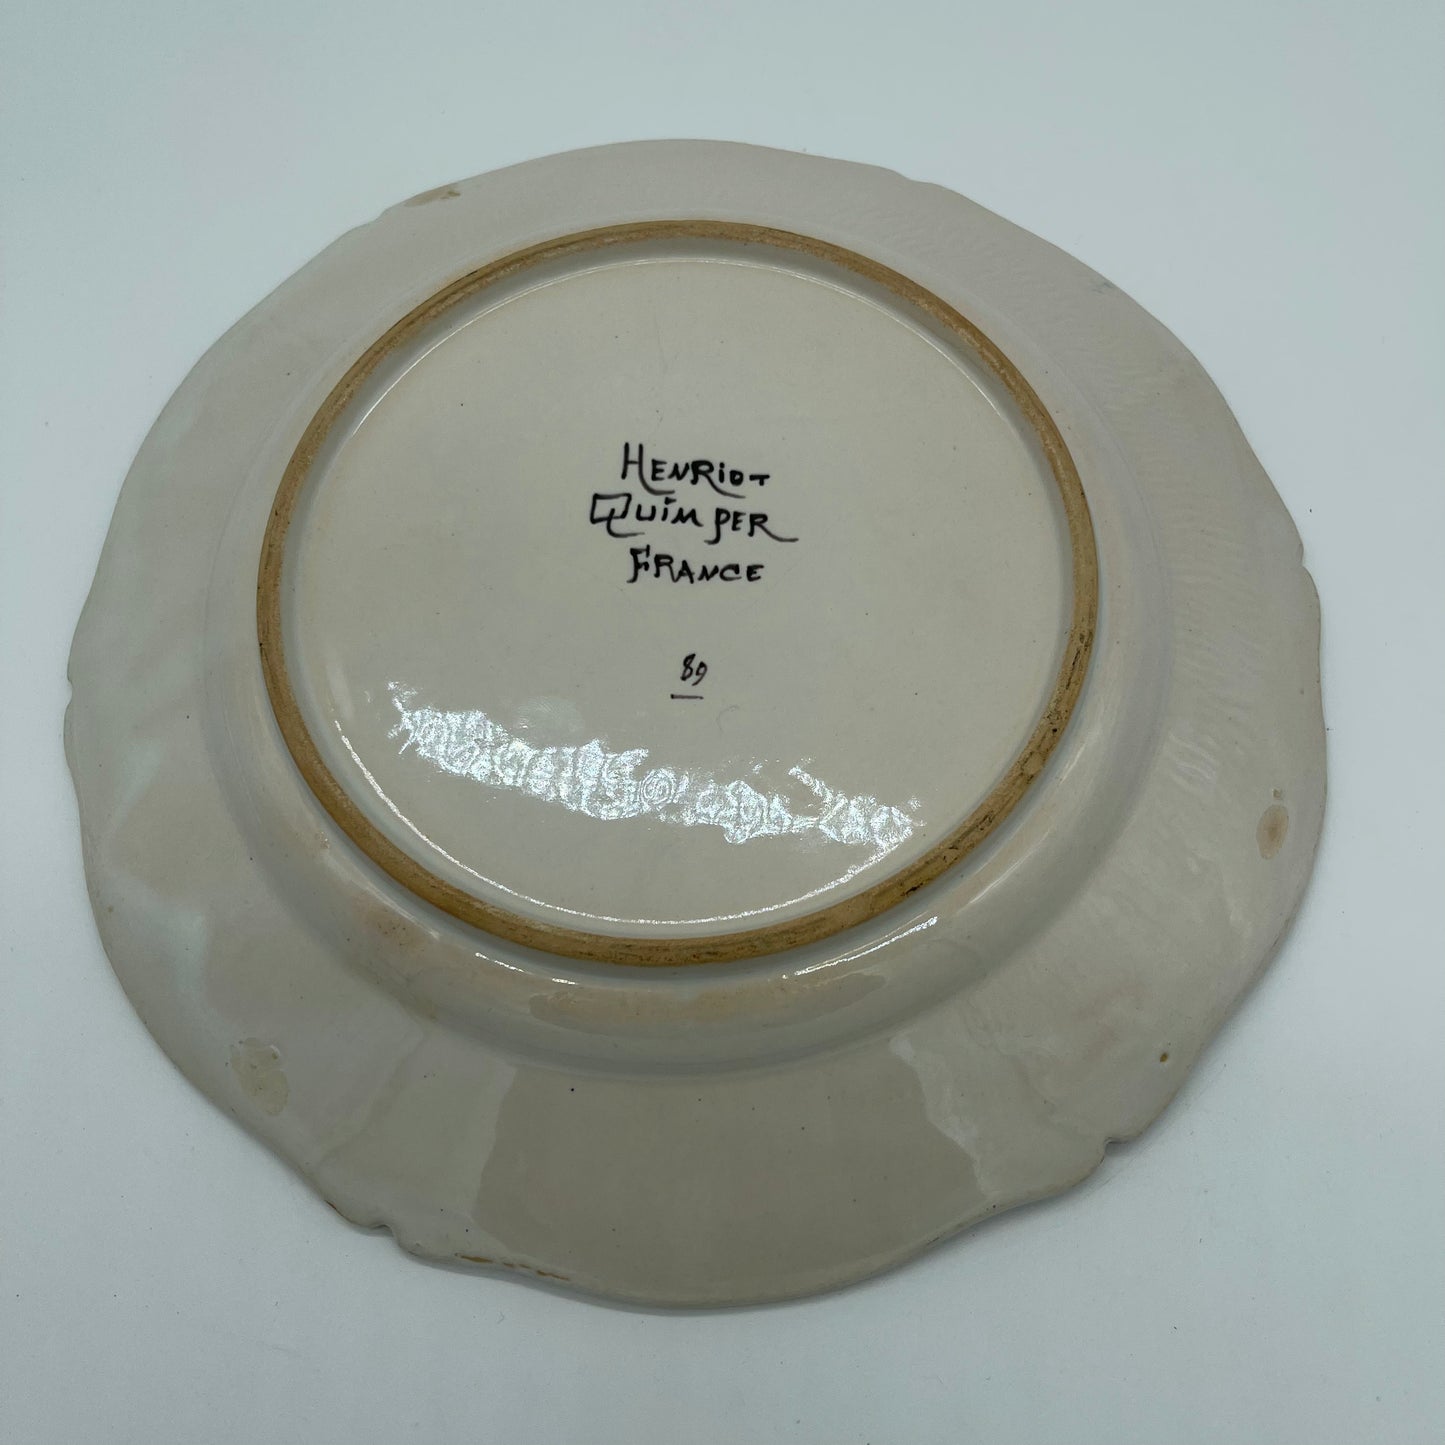 Quimper Plate (Item Number 0075)